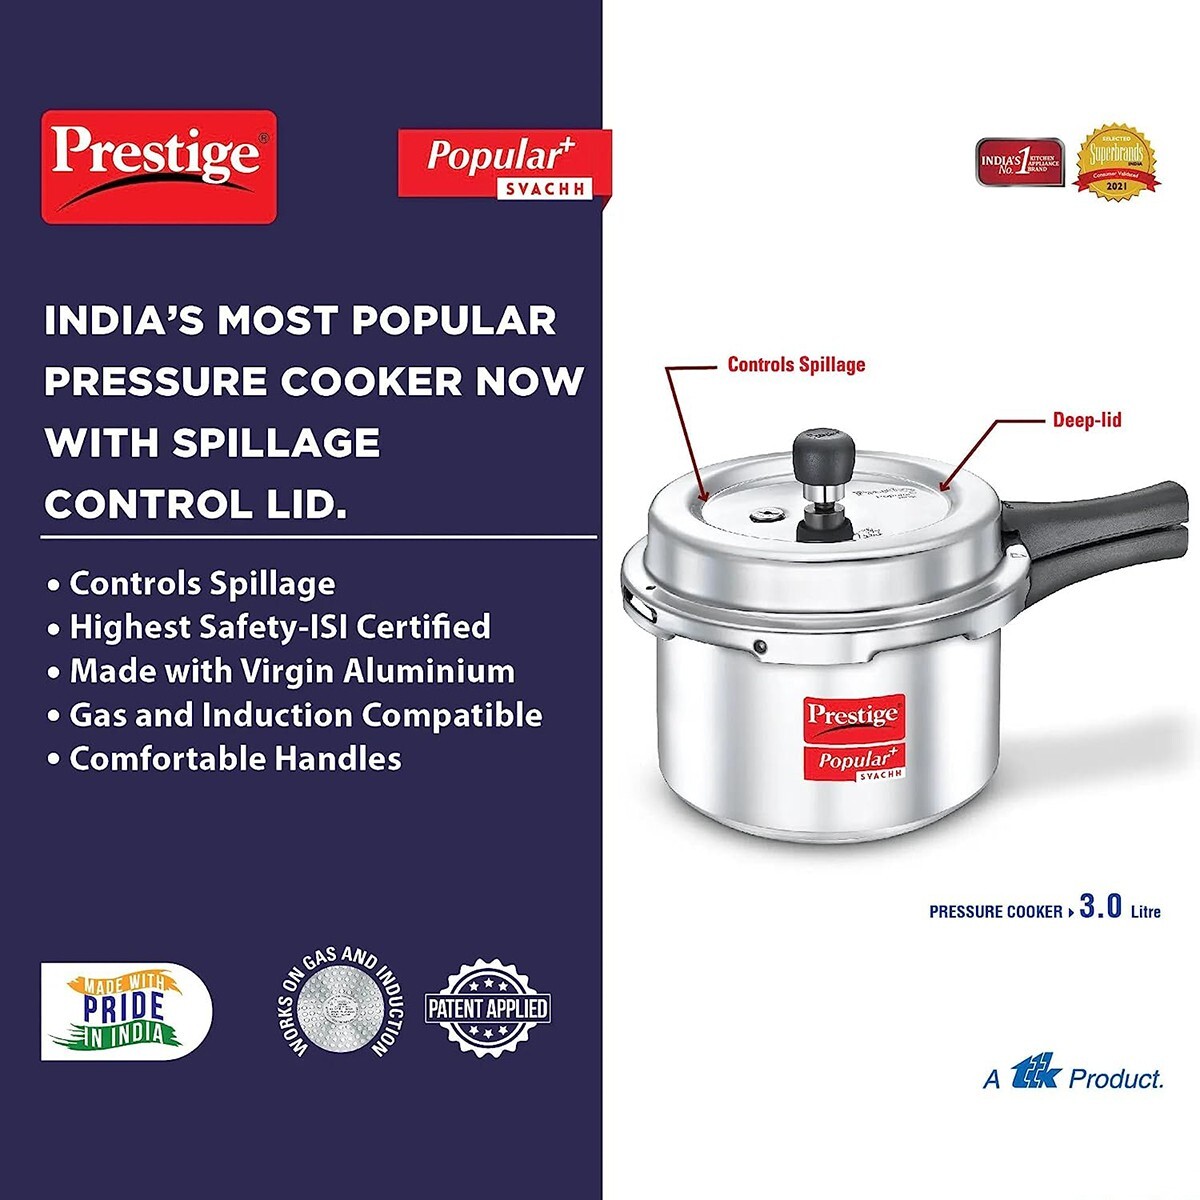 Prestige Popular Plus Aluminium Svachh Outer Lid Pressure Cooker 3L